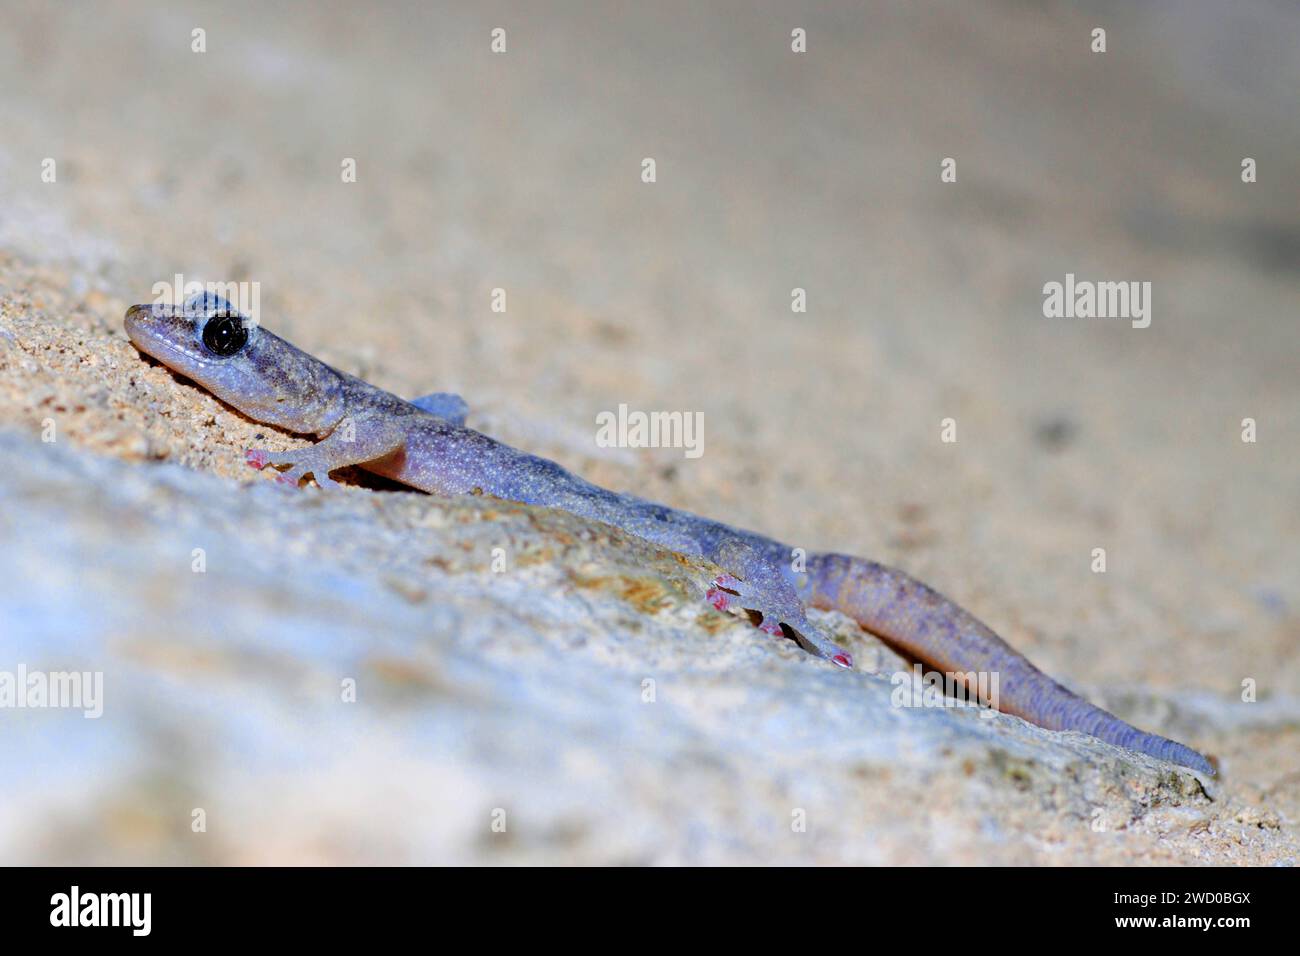 European leaf-toed gecko (Phyllodactylus europaeus, Euleptes europaea), on dry ground, side view, France, Port-Cros Stock Photo